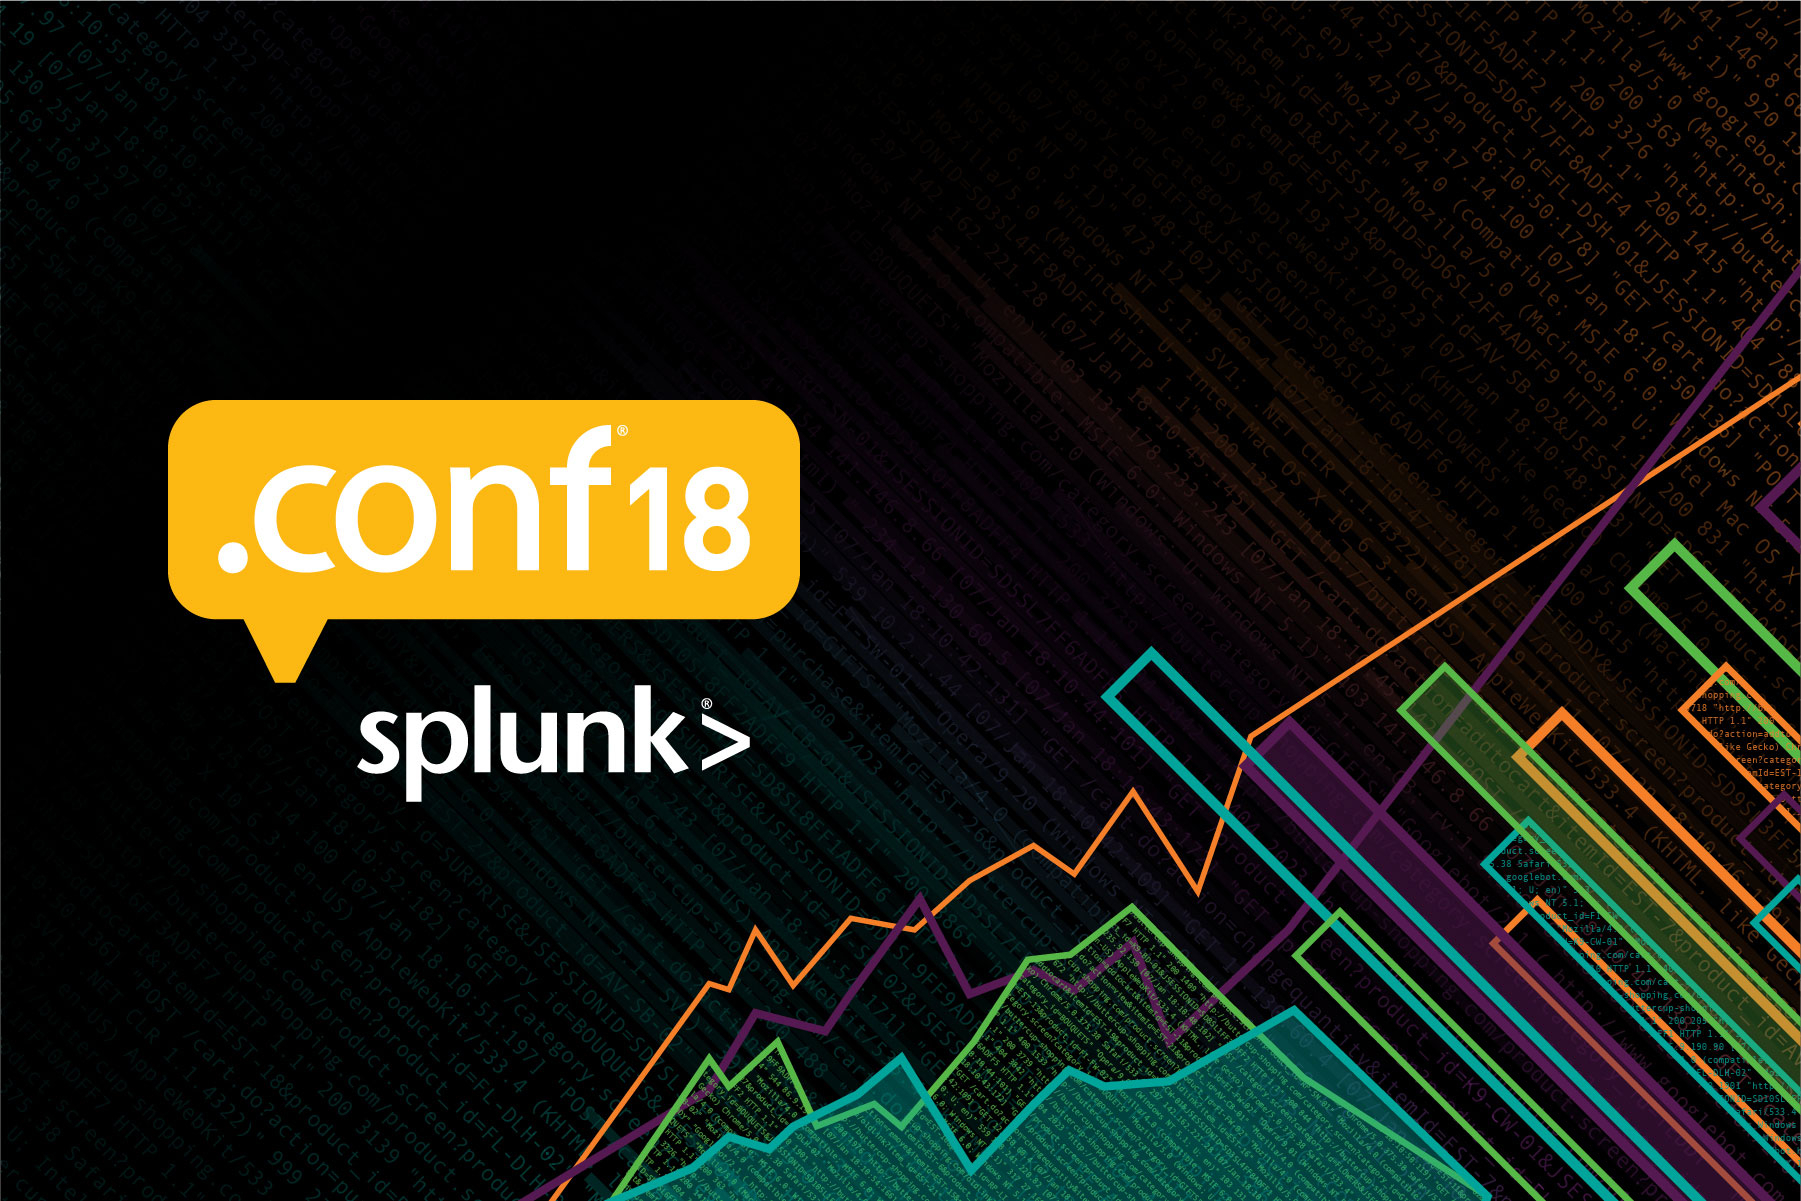 splunk .conf 2019 search party